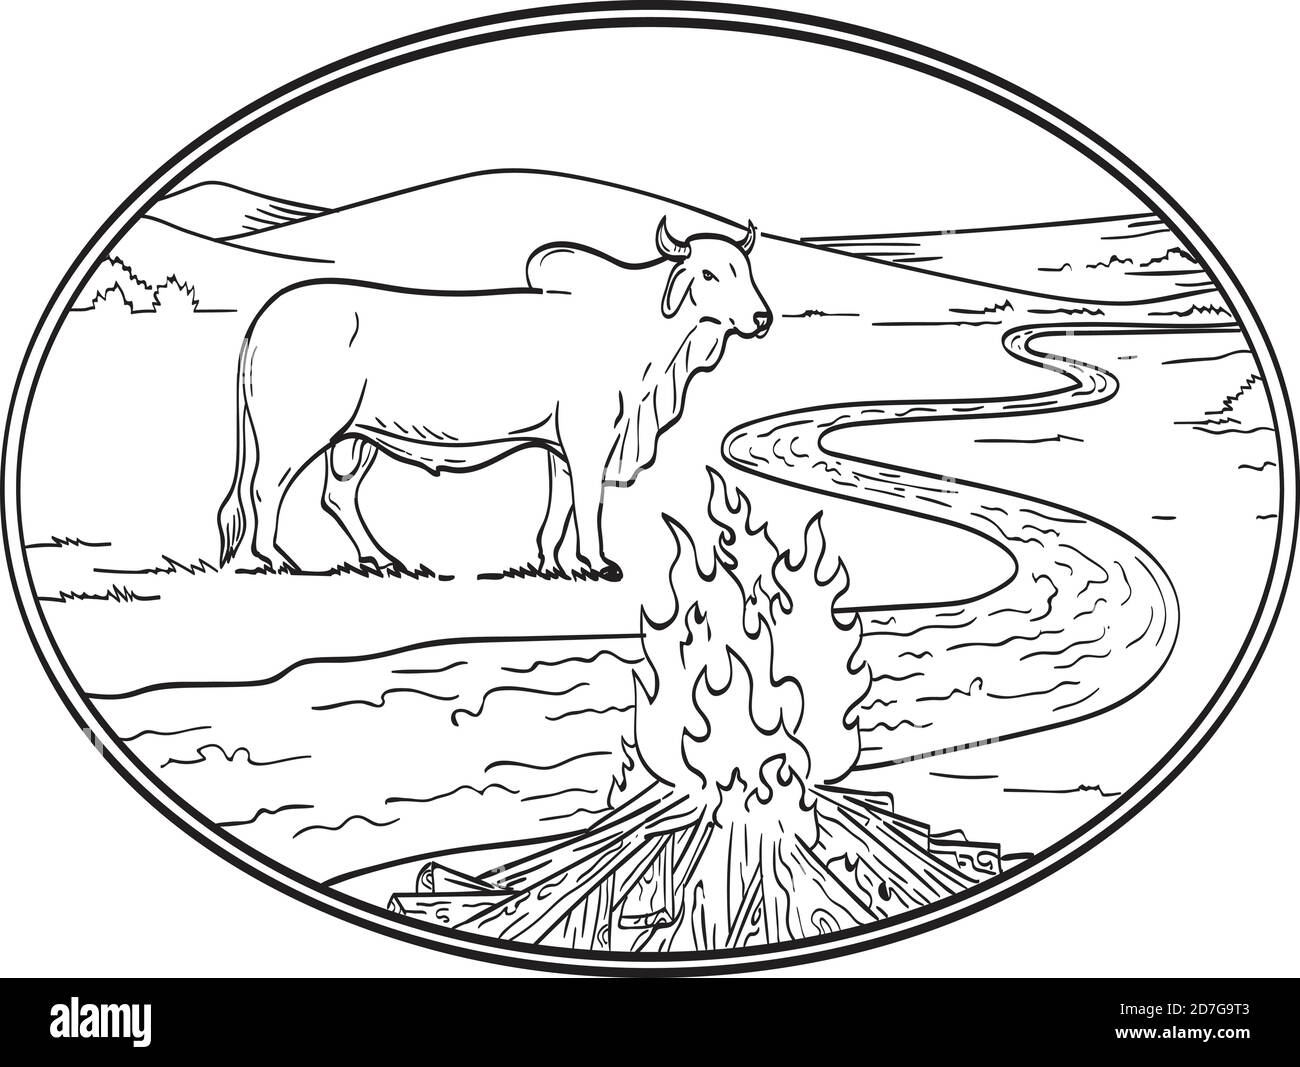 Disegno di linea di illustrazione di un bull di Brahman, una razza americana di bestiame bovino di zebuino con fiume o torrente tortuoso, catena montuosa e campo di fuoco Illustrazione Vettoriale